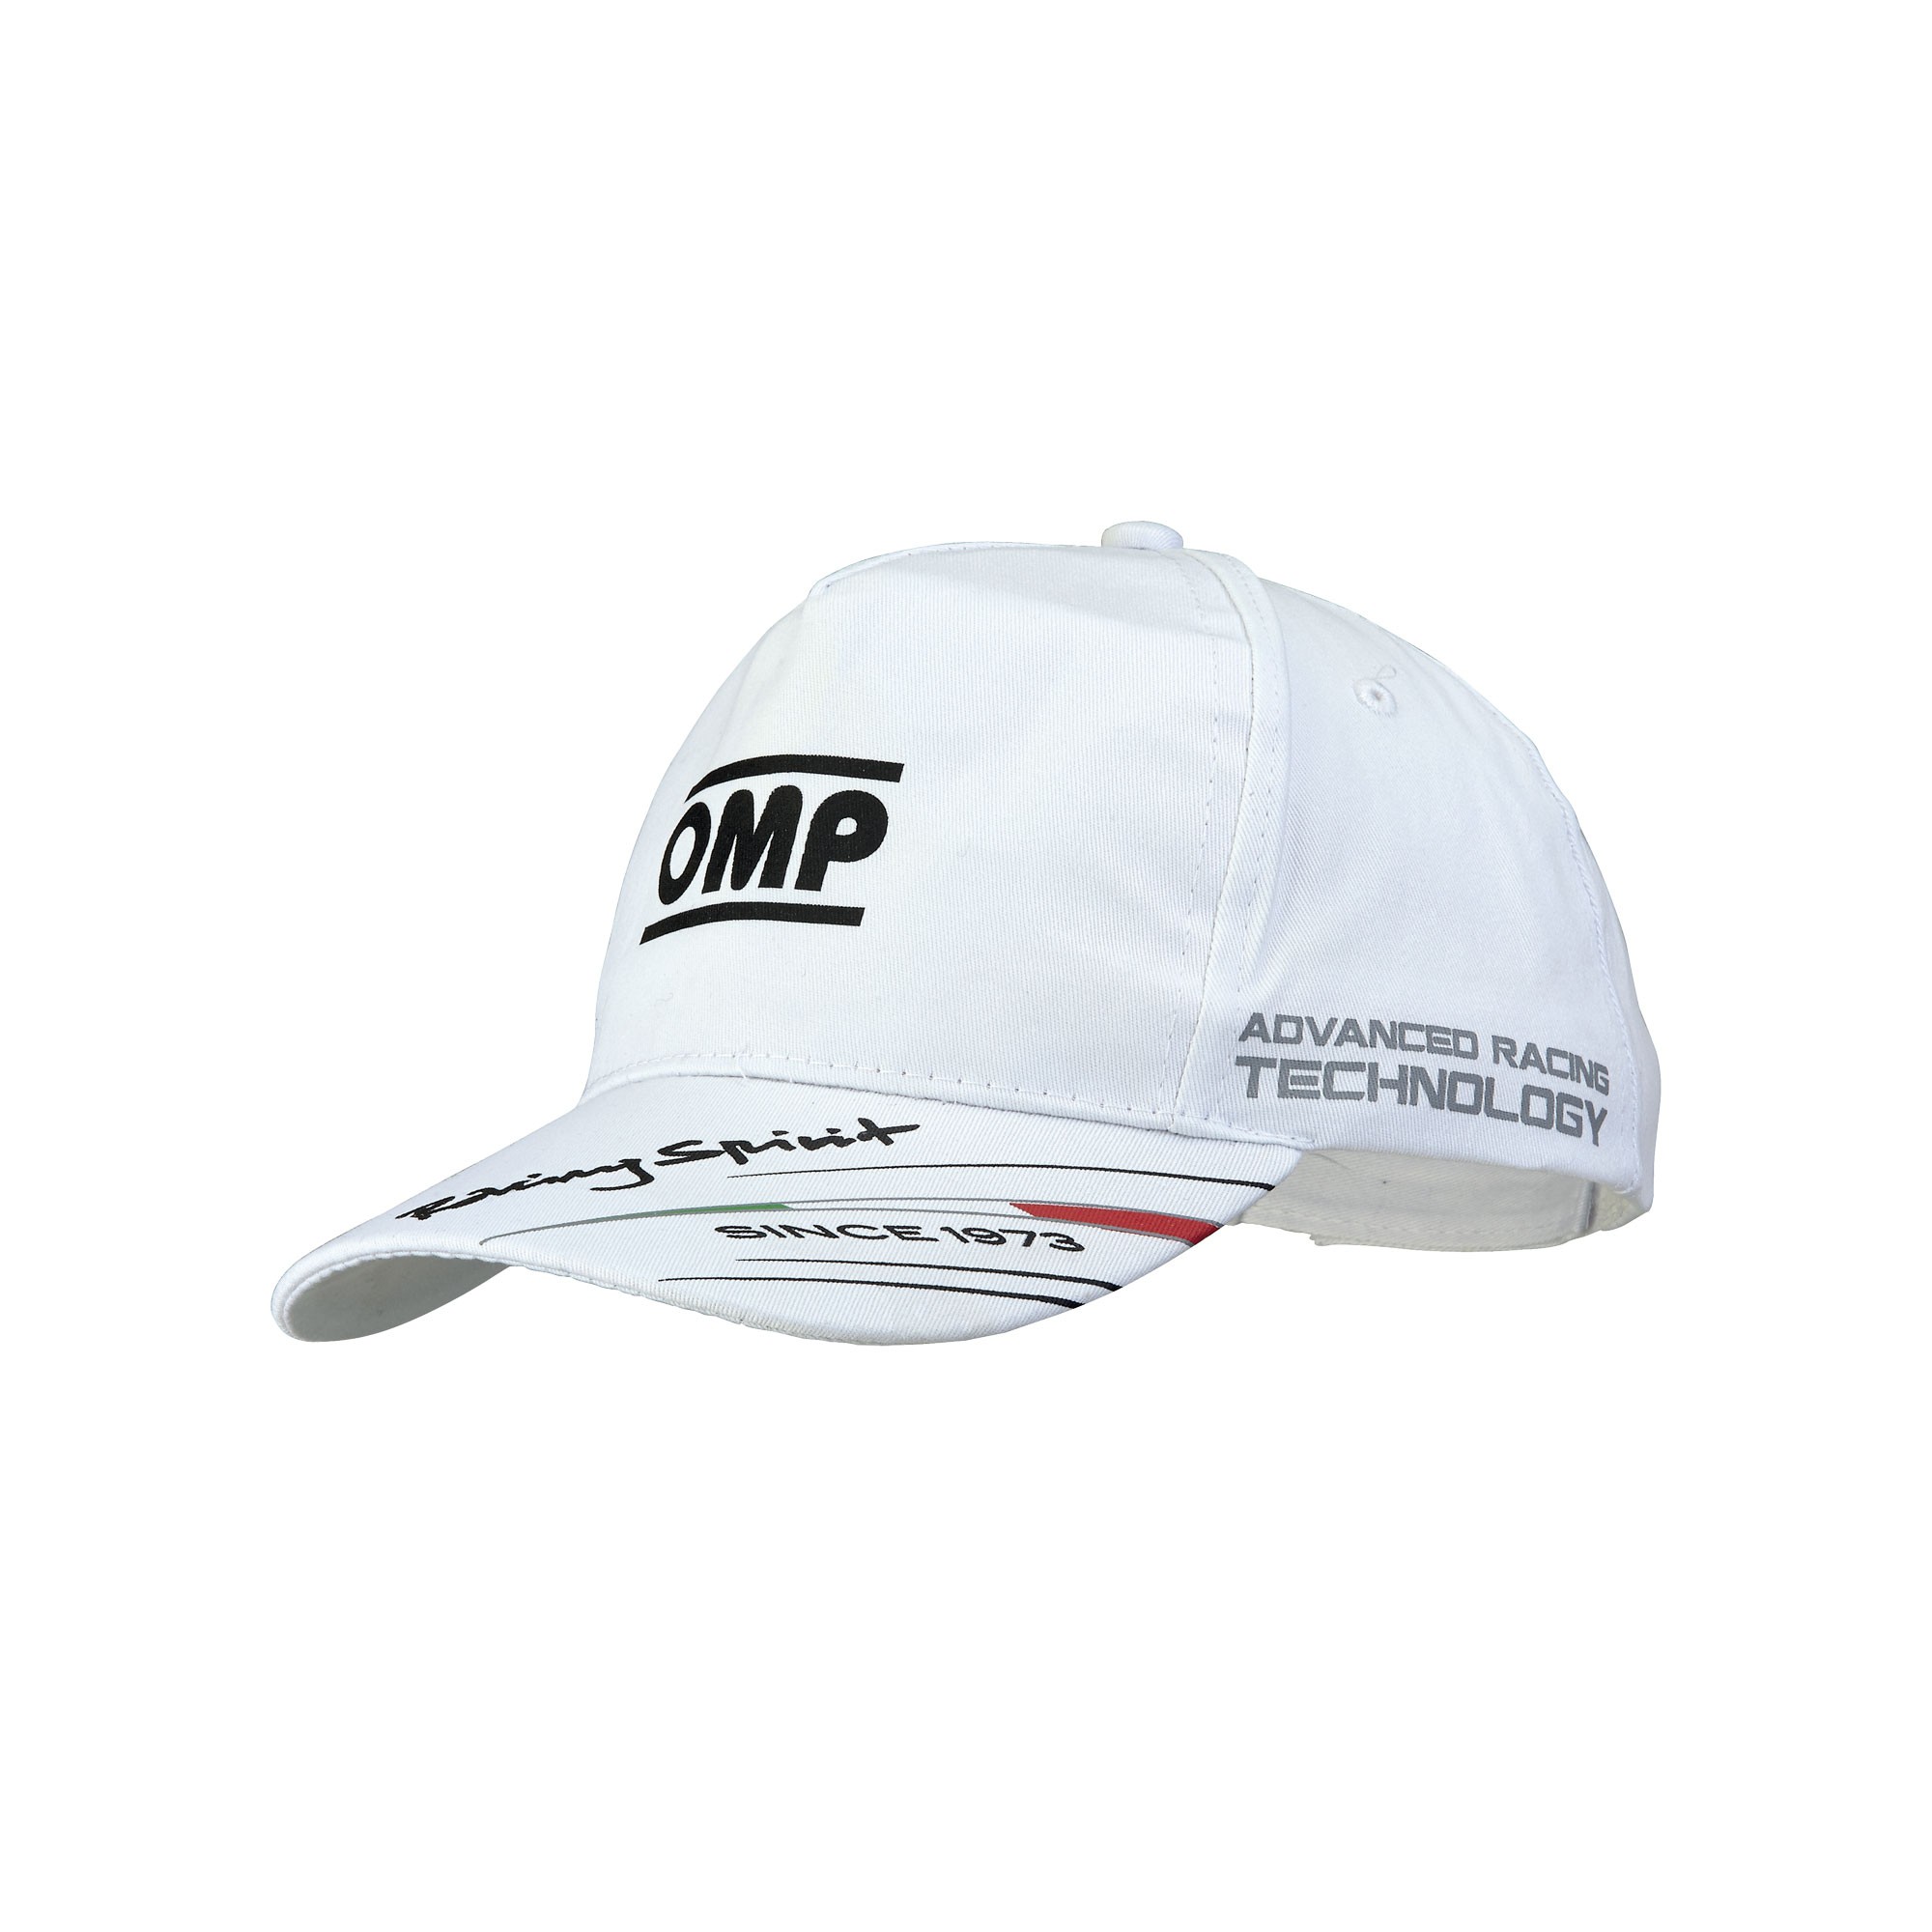 OMP CAP